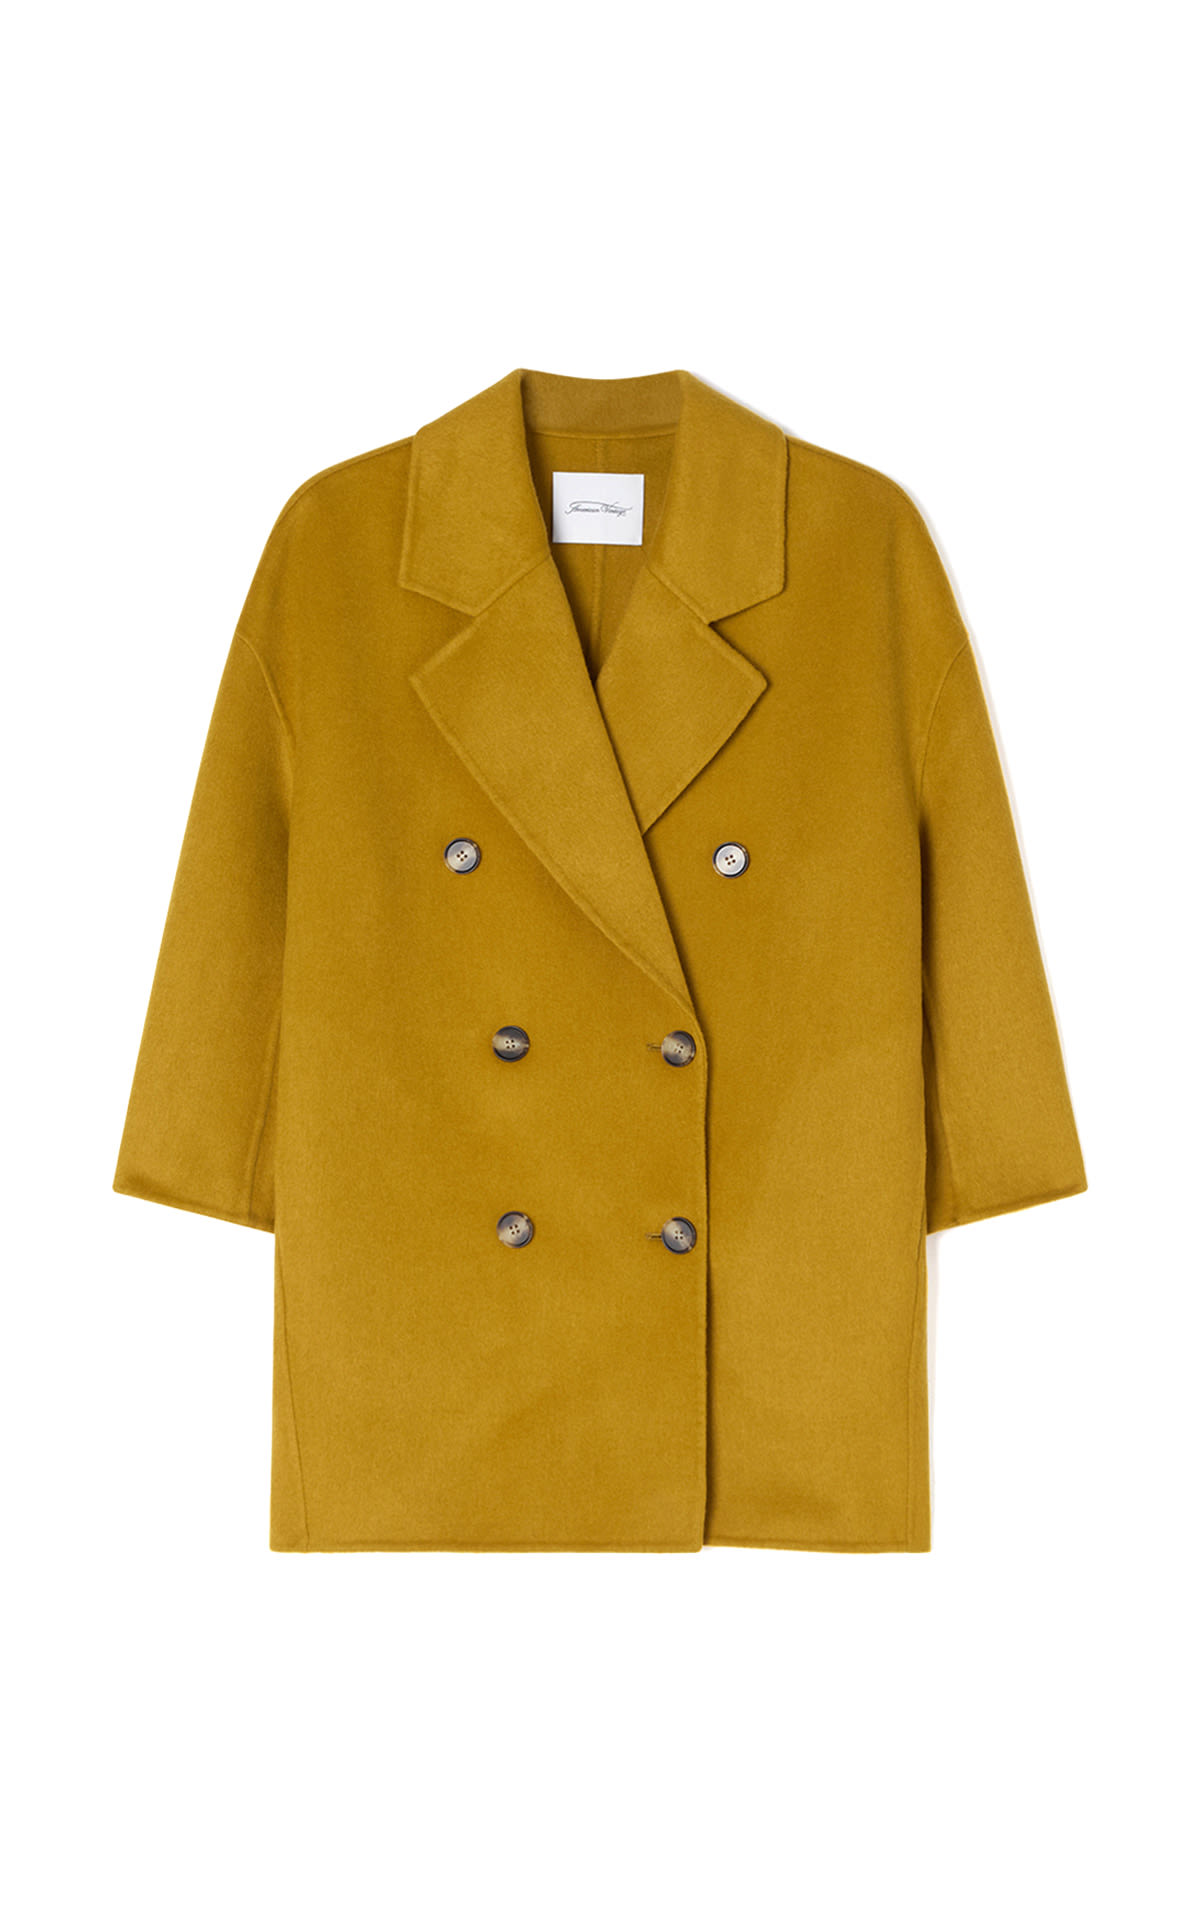 Abrigo amarillo mostaza American Vintage